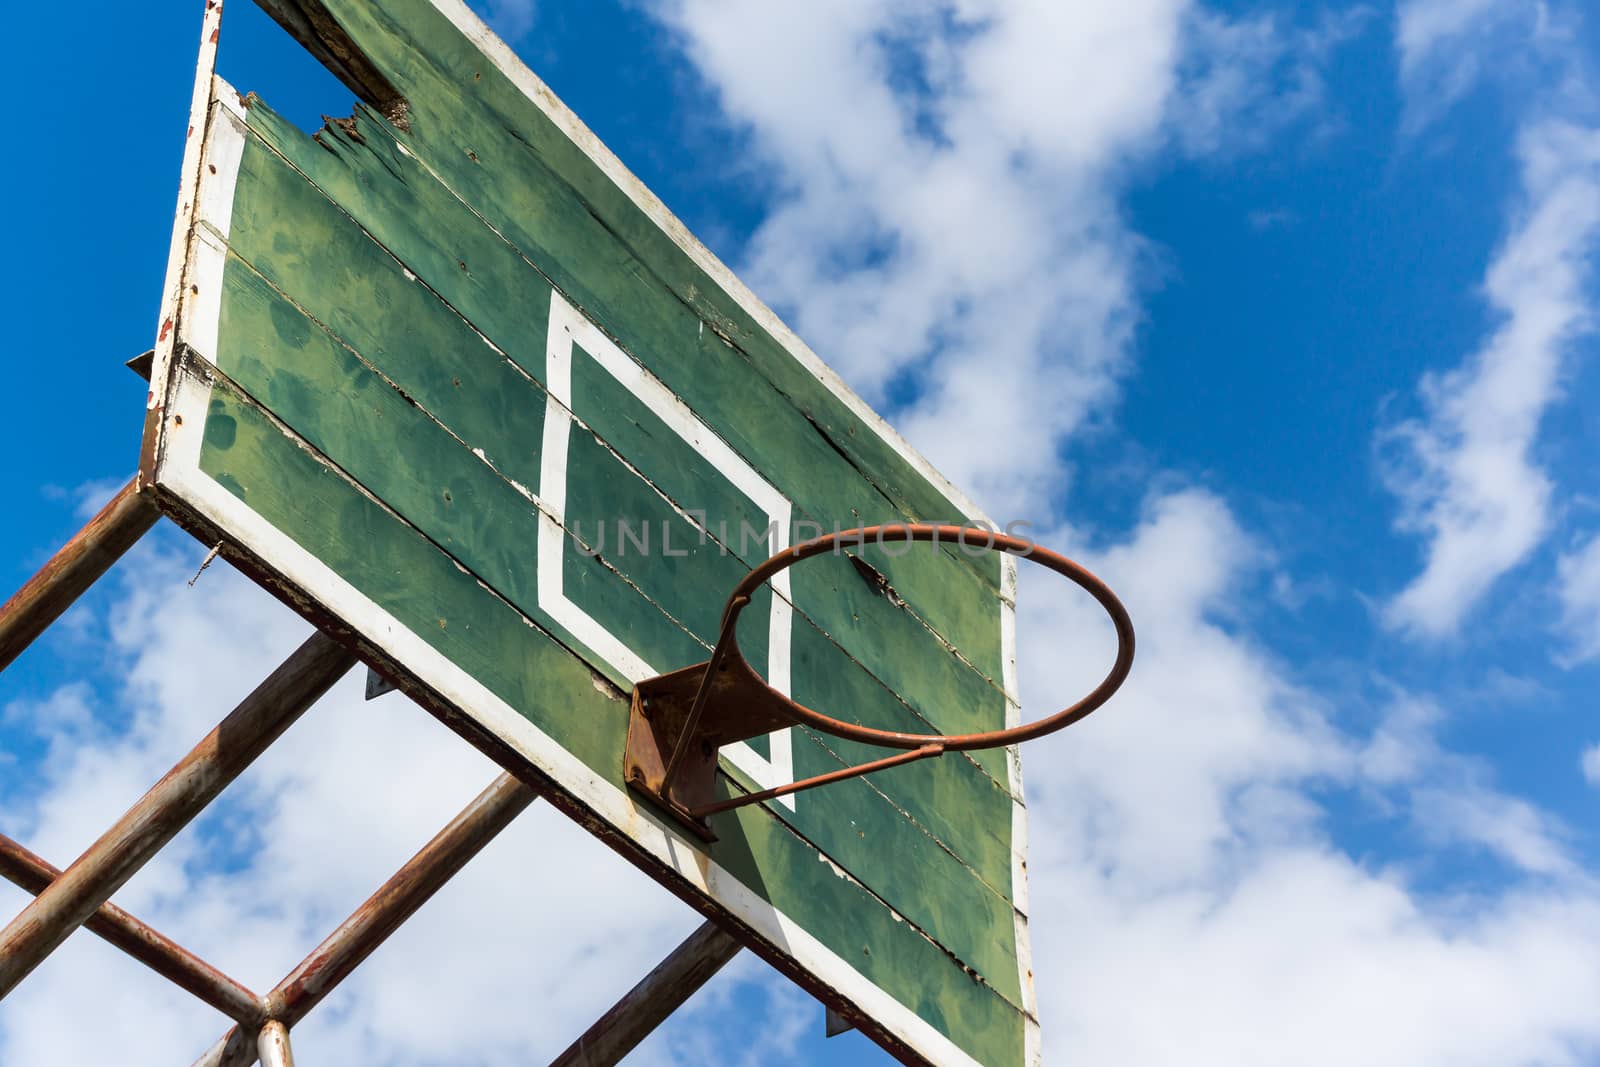 basketball hoop old on blue sky background